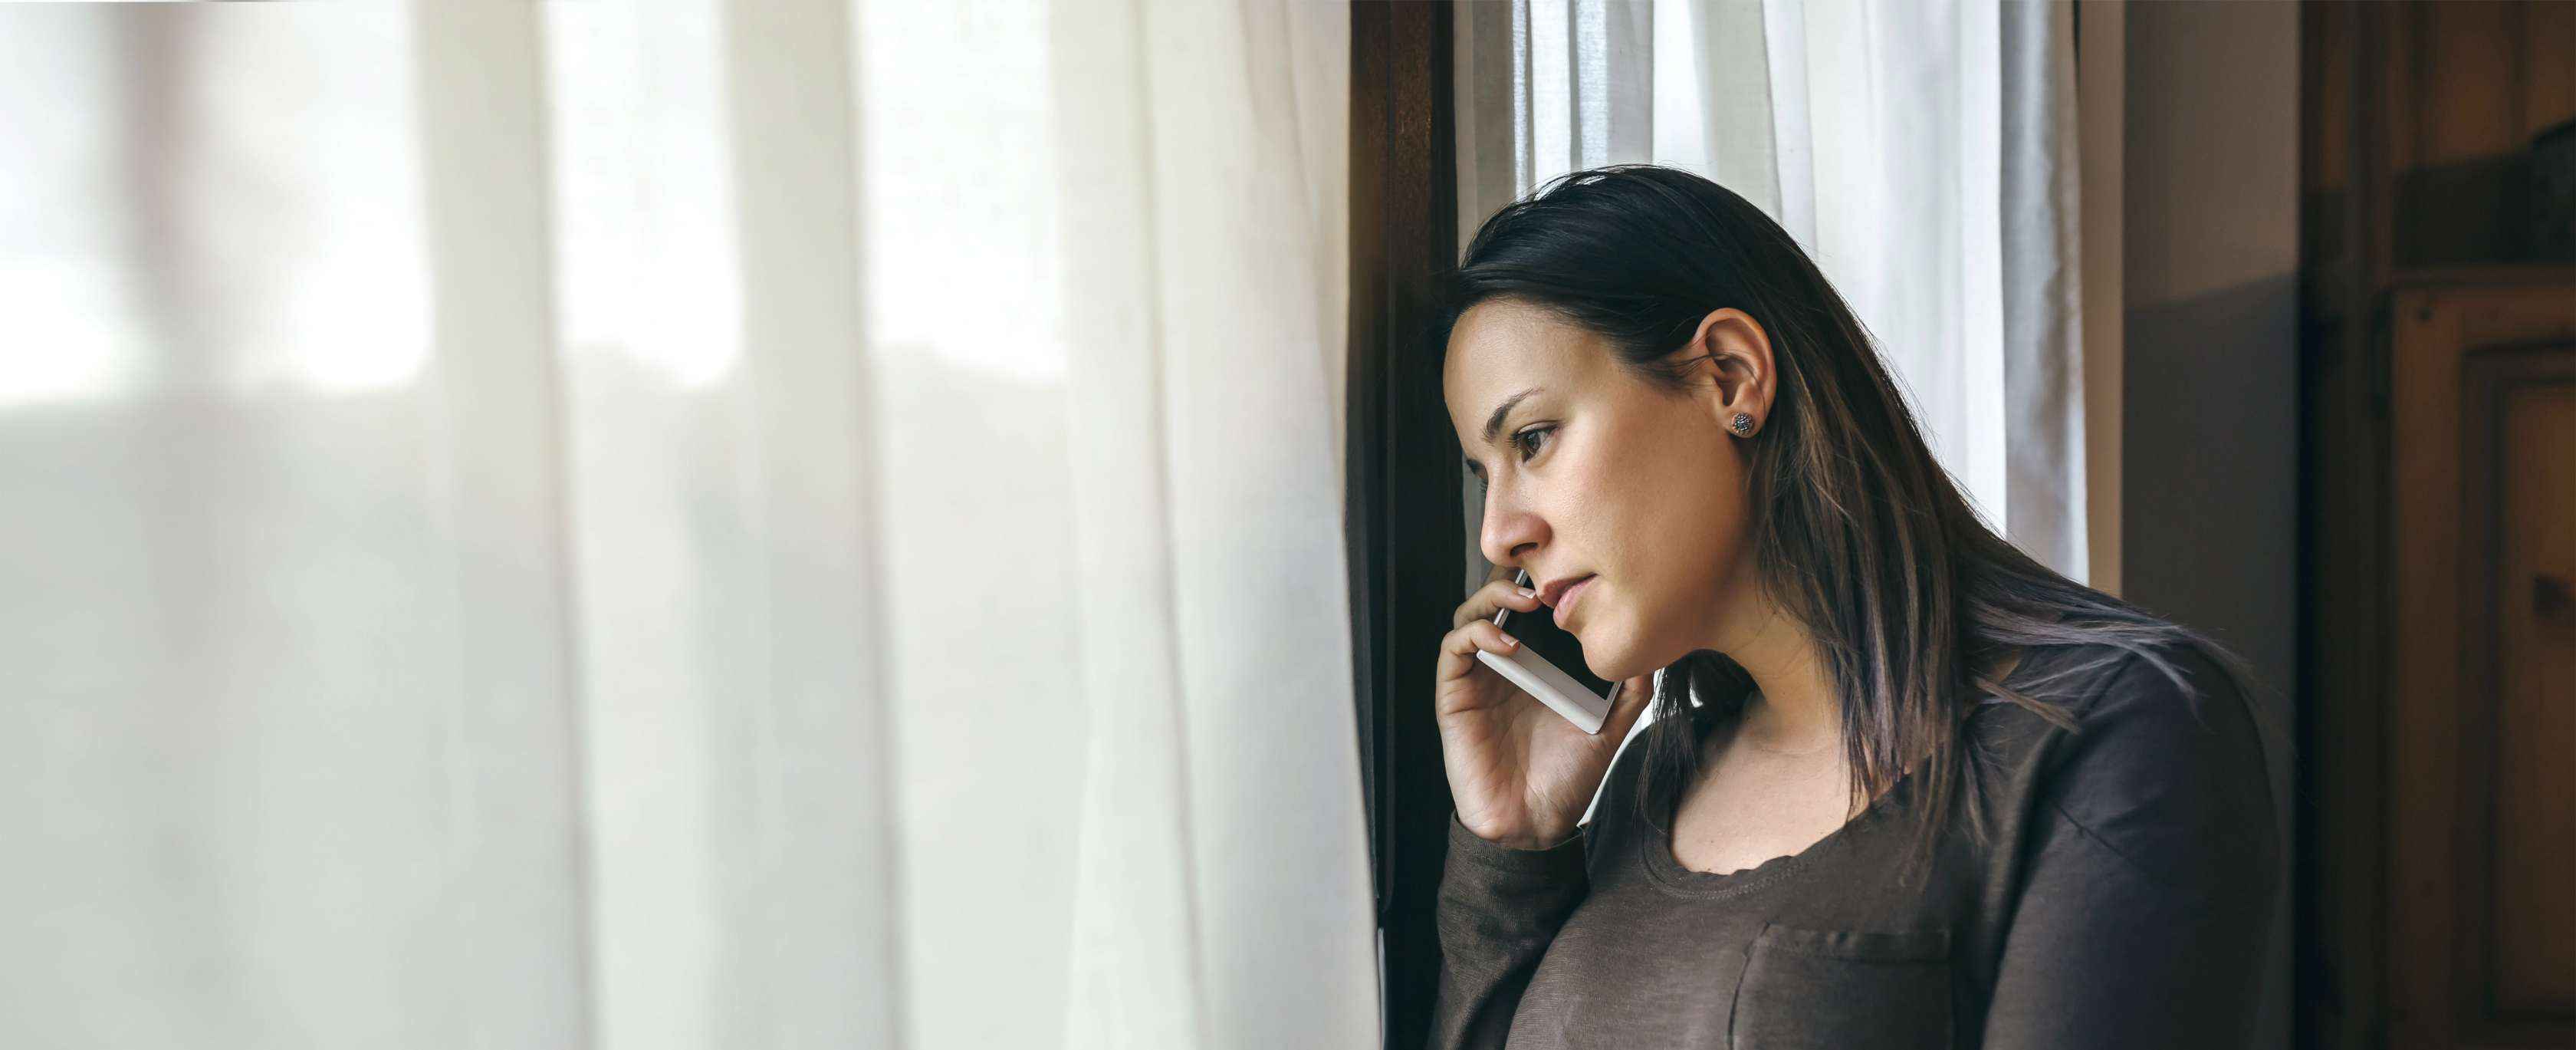 Verhalten nach Einbruch: Frau lehnt am Fenster und telefoniert